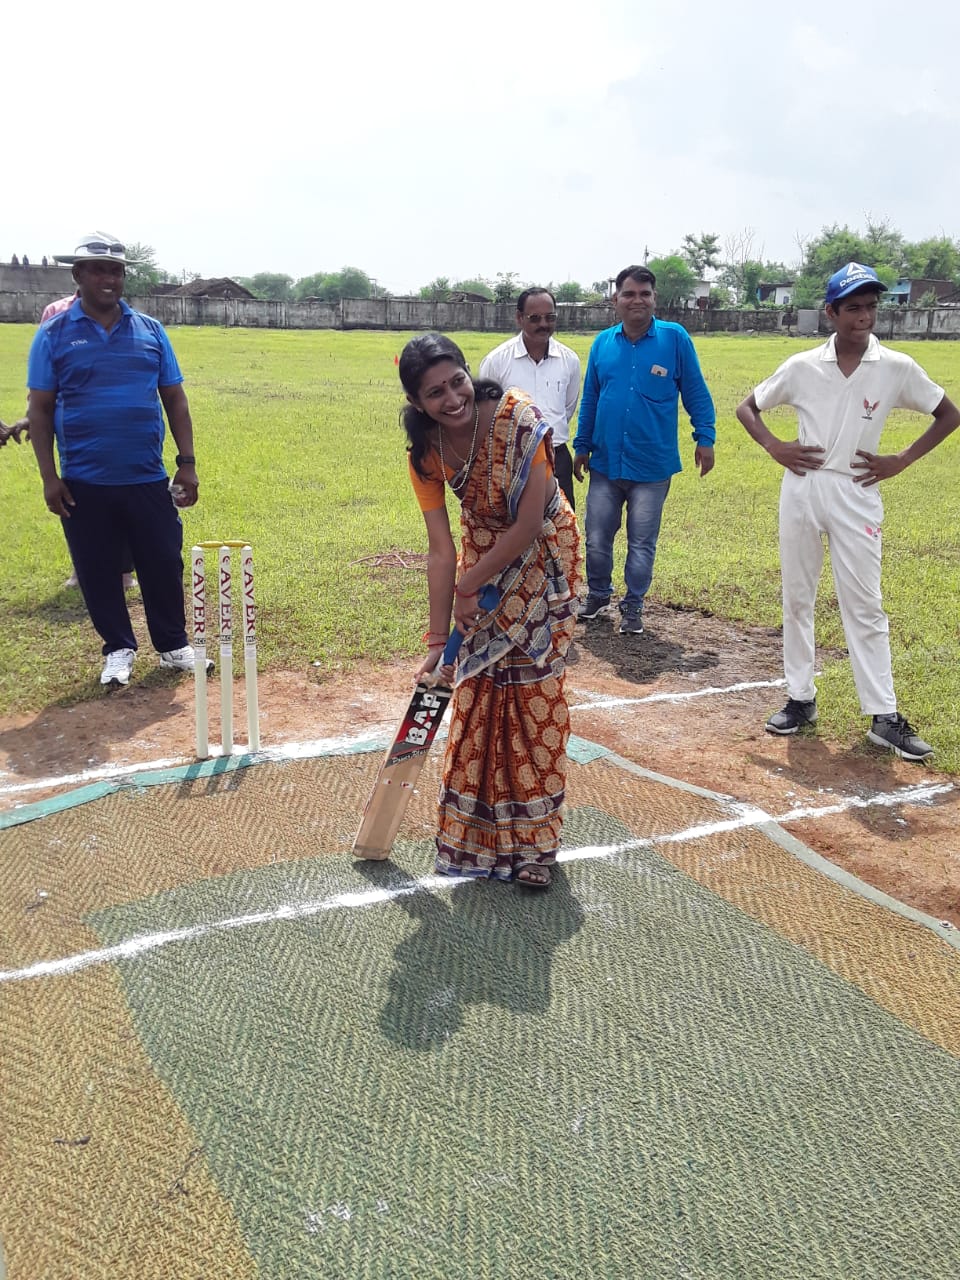 संभागीय शालेय क्रिकेट टूर्नामेंट का हुआ भव्य शुभारंभ, नोबल स्कूल मैदान में खिलाड़ियों ने दिखाये जौहर | New India Times